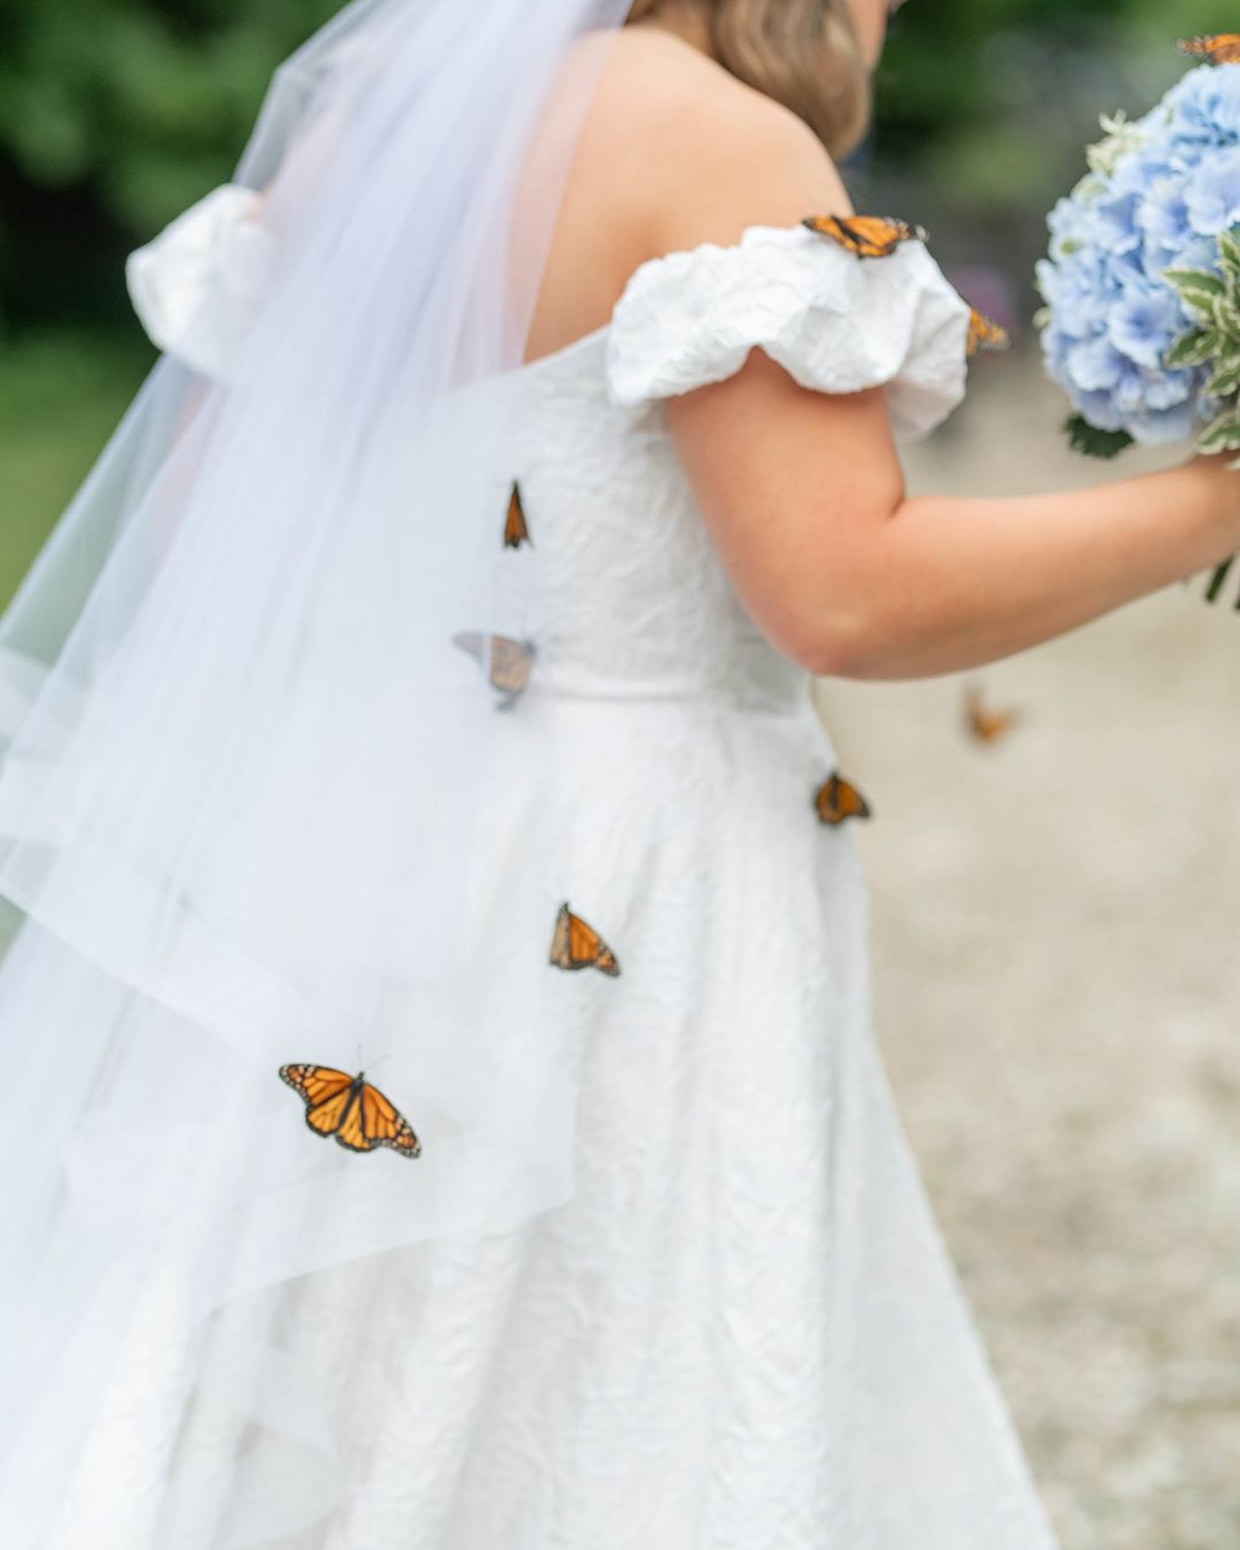 Butterflies on a wedding dress